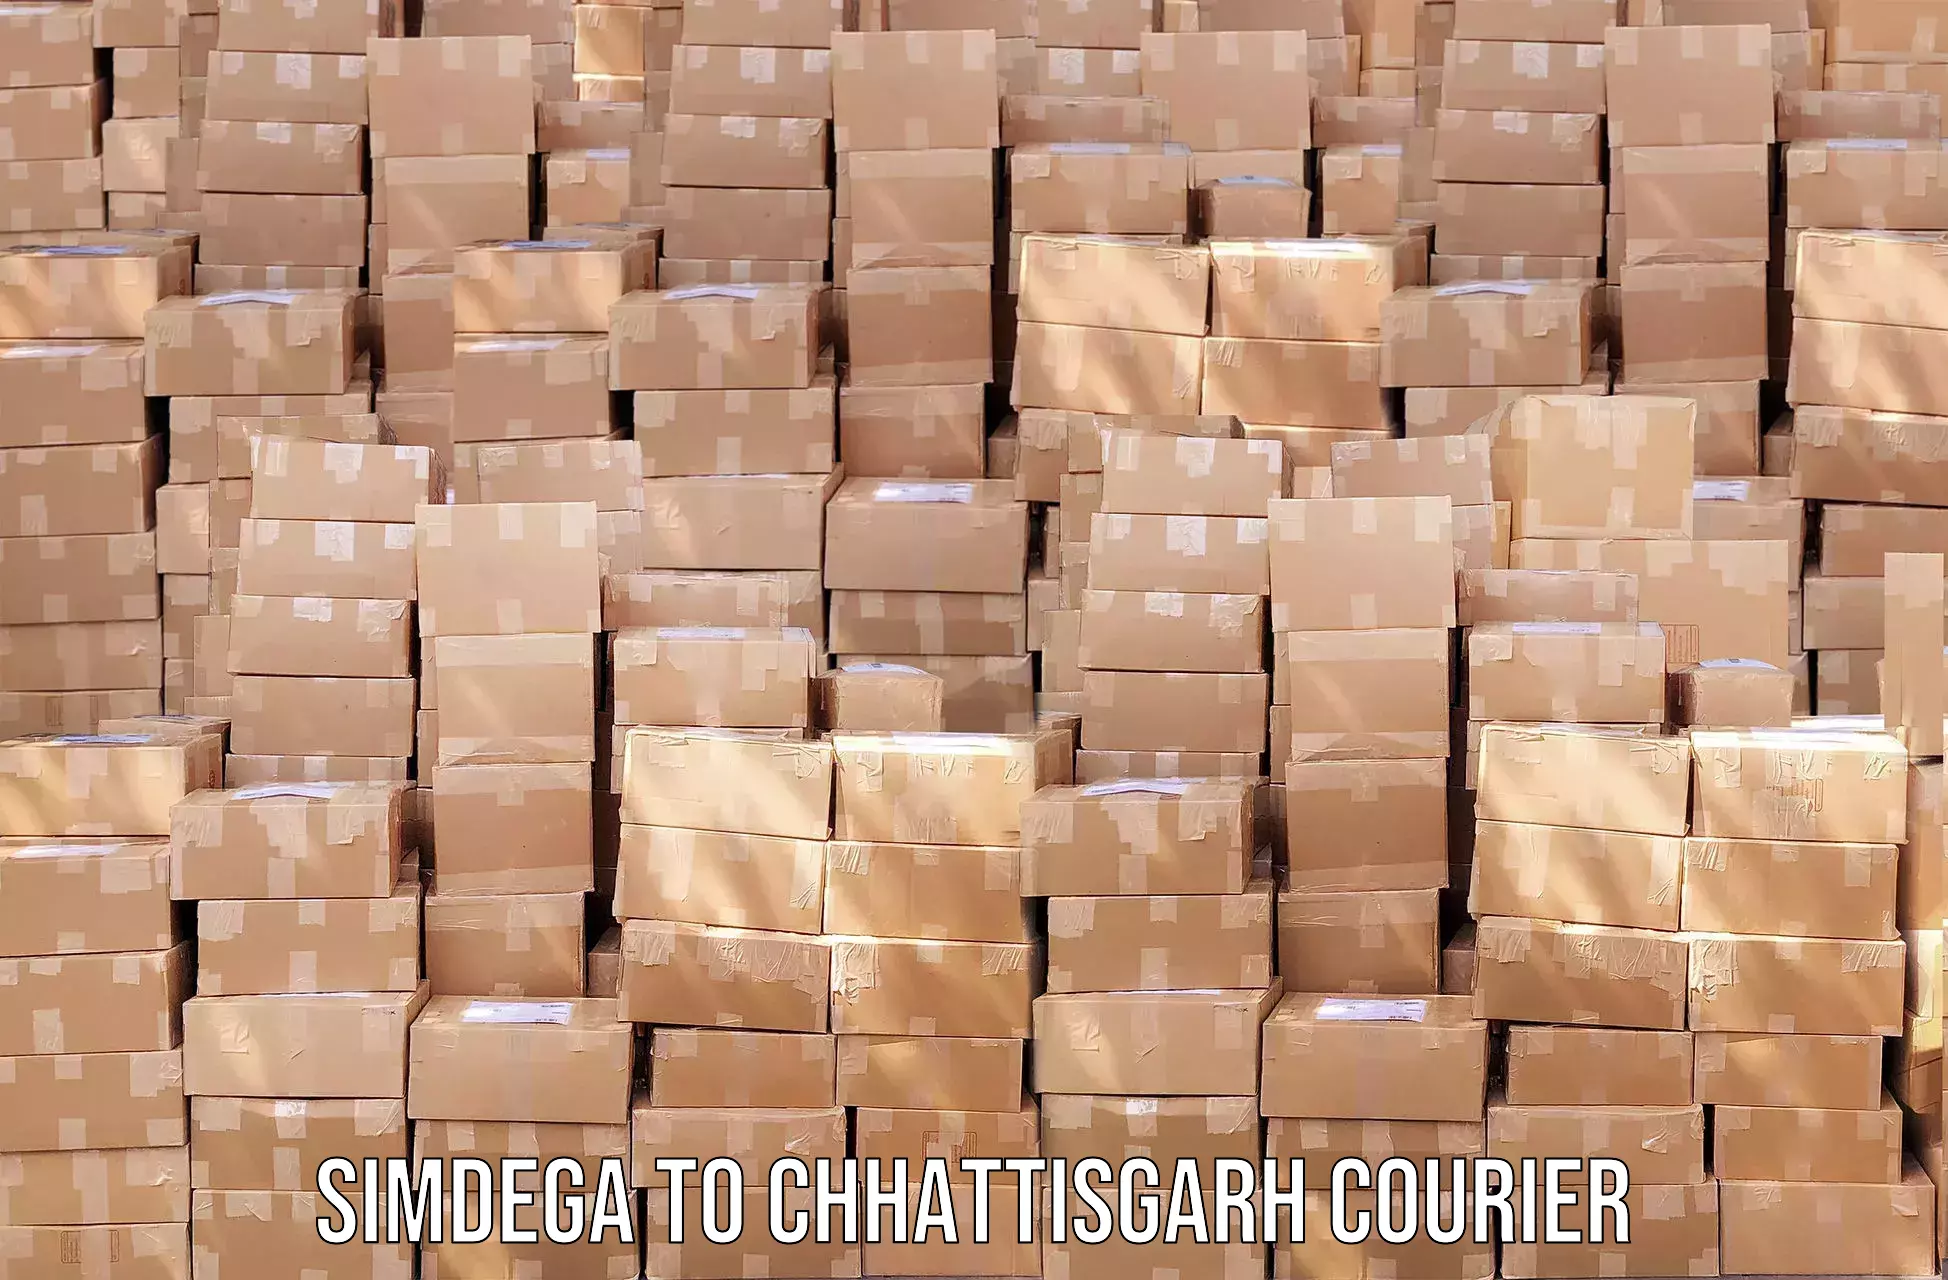 Affordable parcel service in Simdega to Raigarh Chhattisgarh